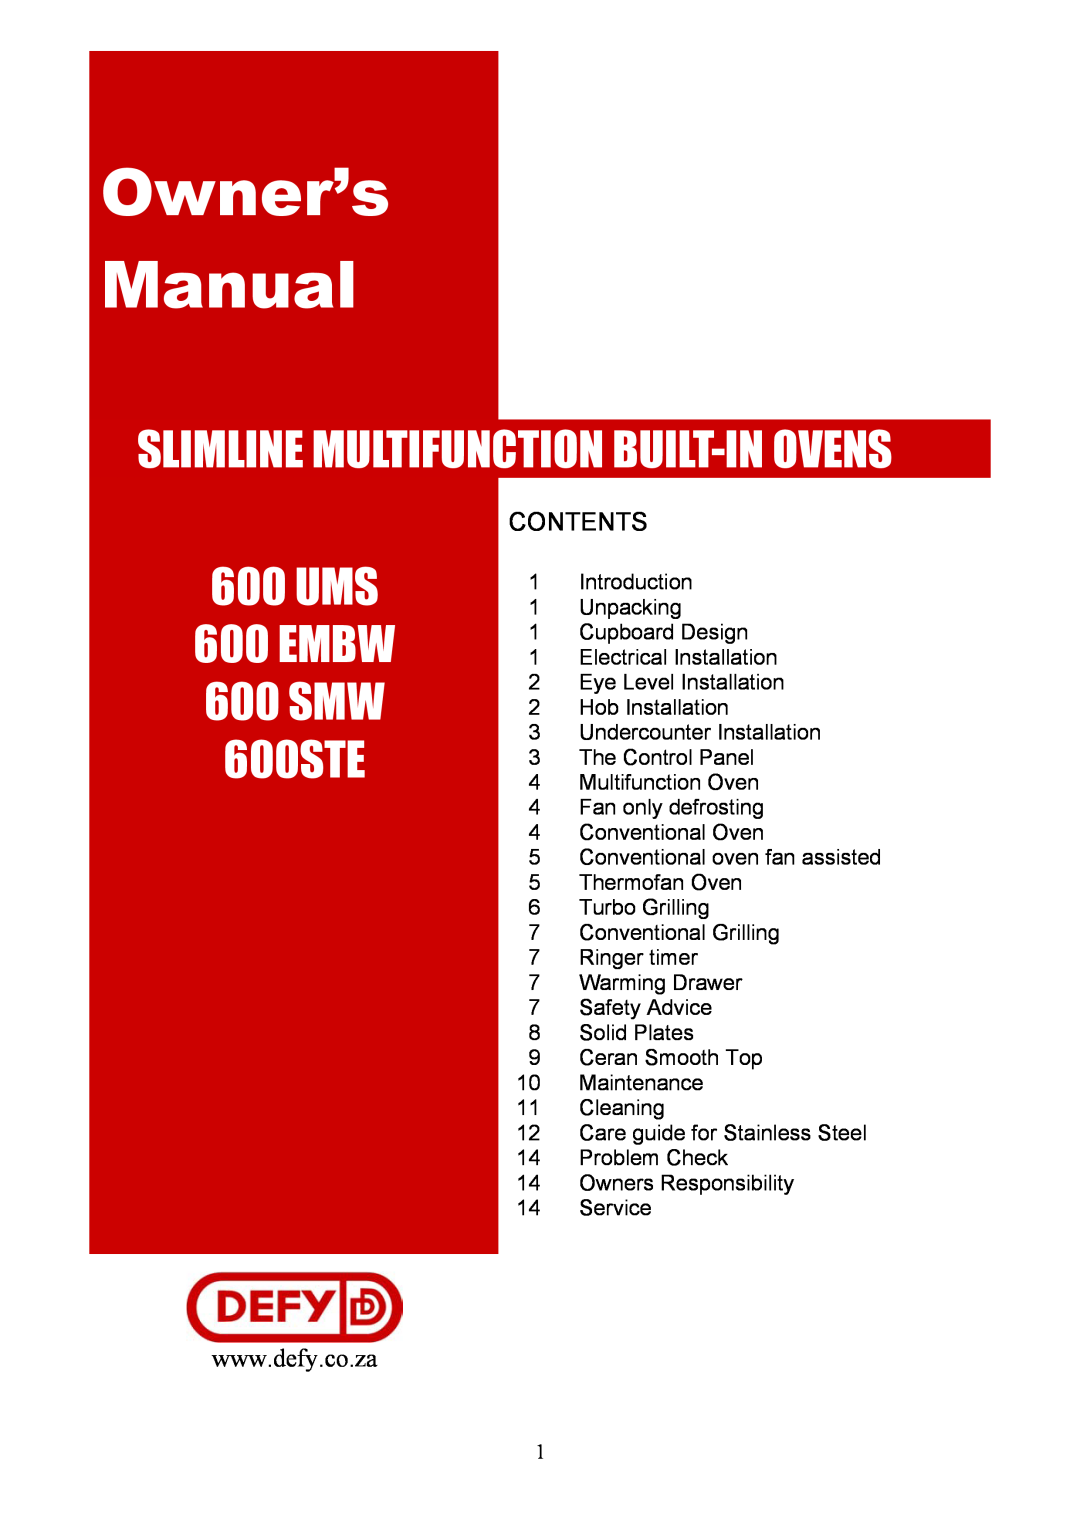 Defy Appliances 600 UMS owner manual Slimline Multifunction Built-In Ovens, 600STE, UMS 600 EMBW 600 SMW, Contents 